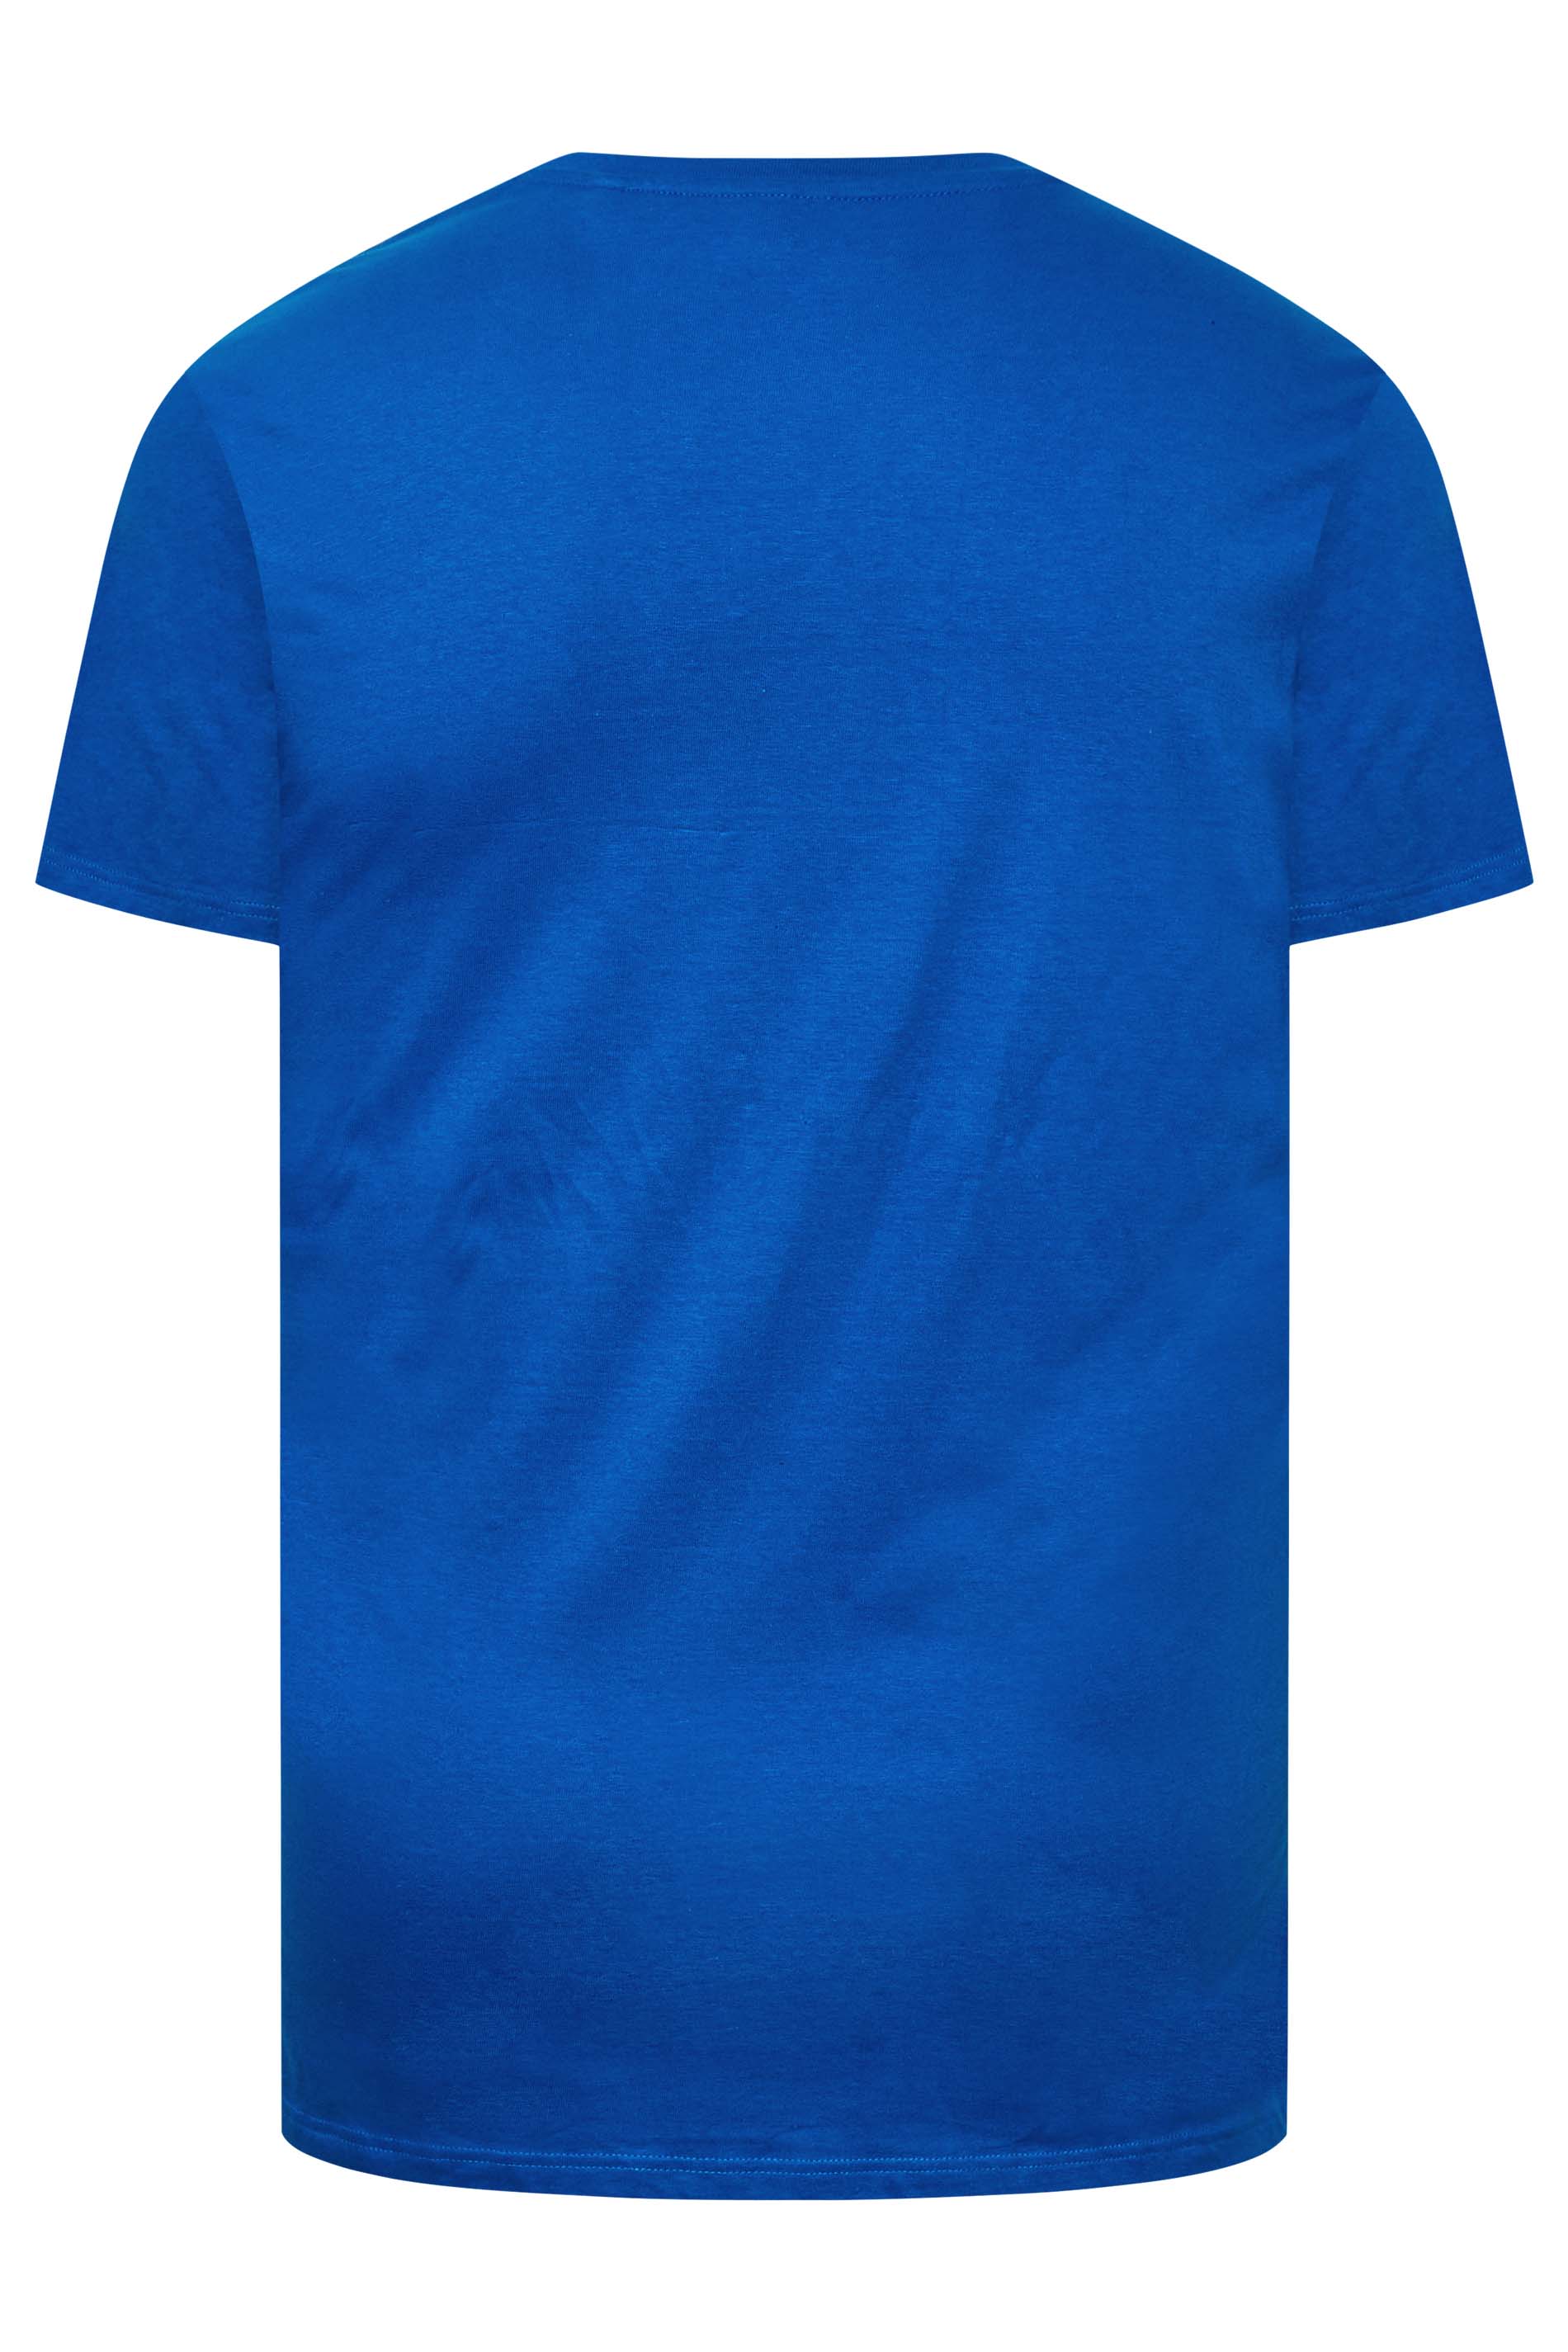 BadRhino Blue Graphic Sky Rider T-Shirt | BadRhino 3